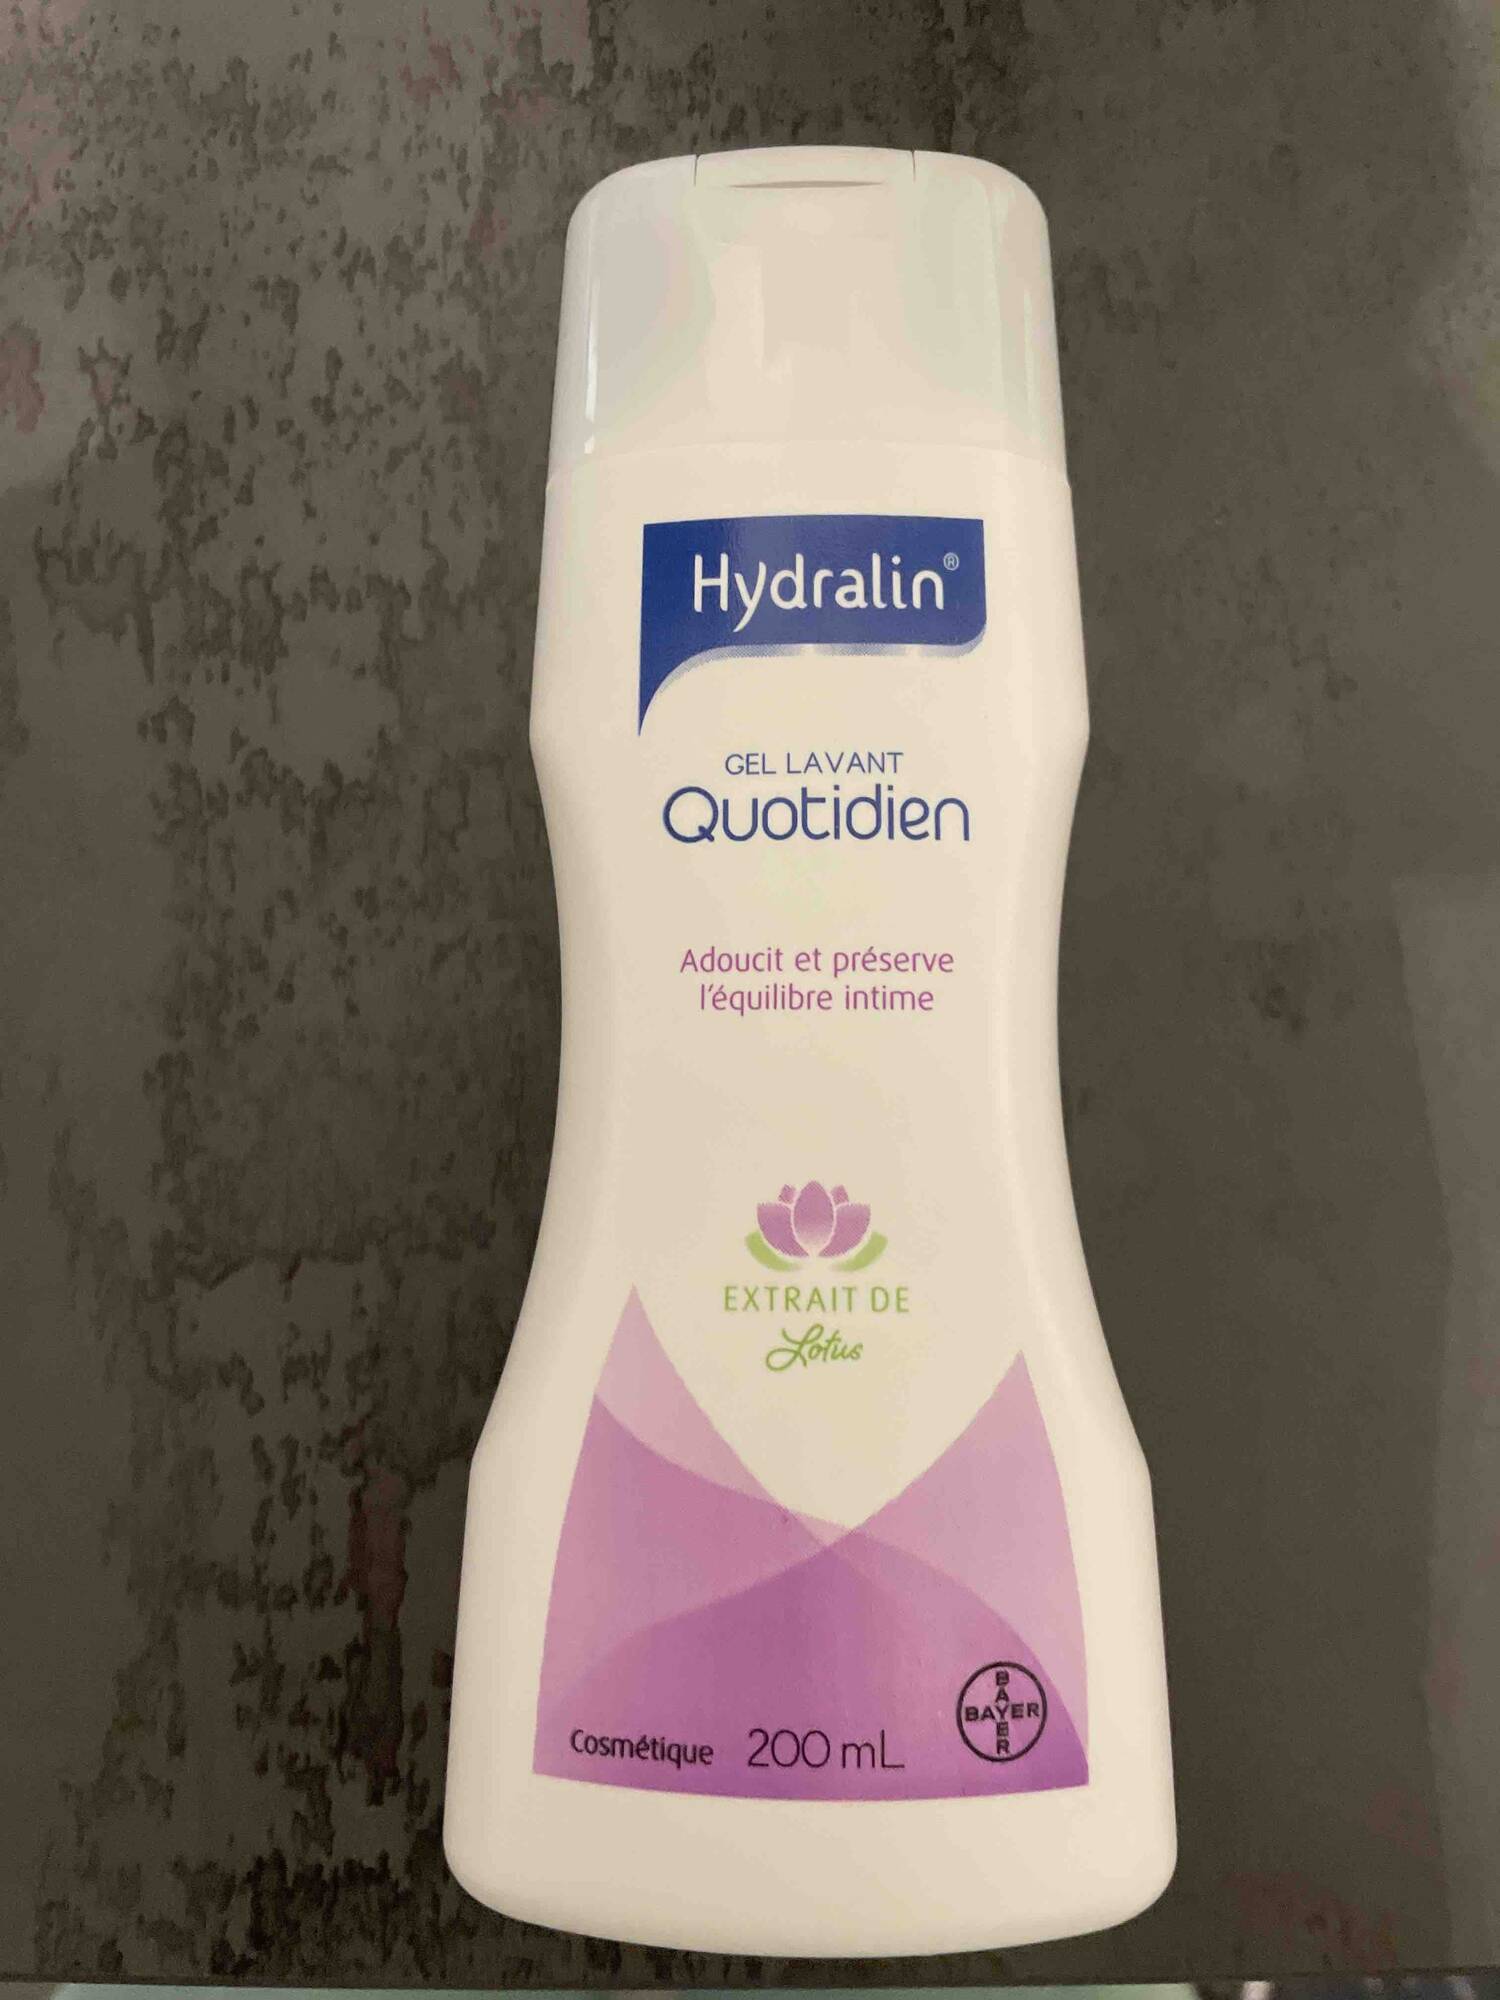 HYDRALIN - Gel lavant Quotidien adoucit et préserve l'équilibre intime